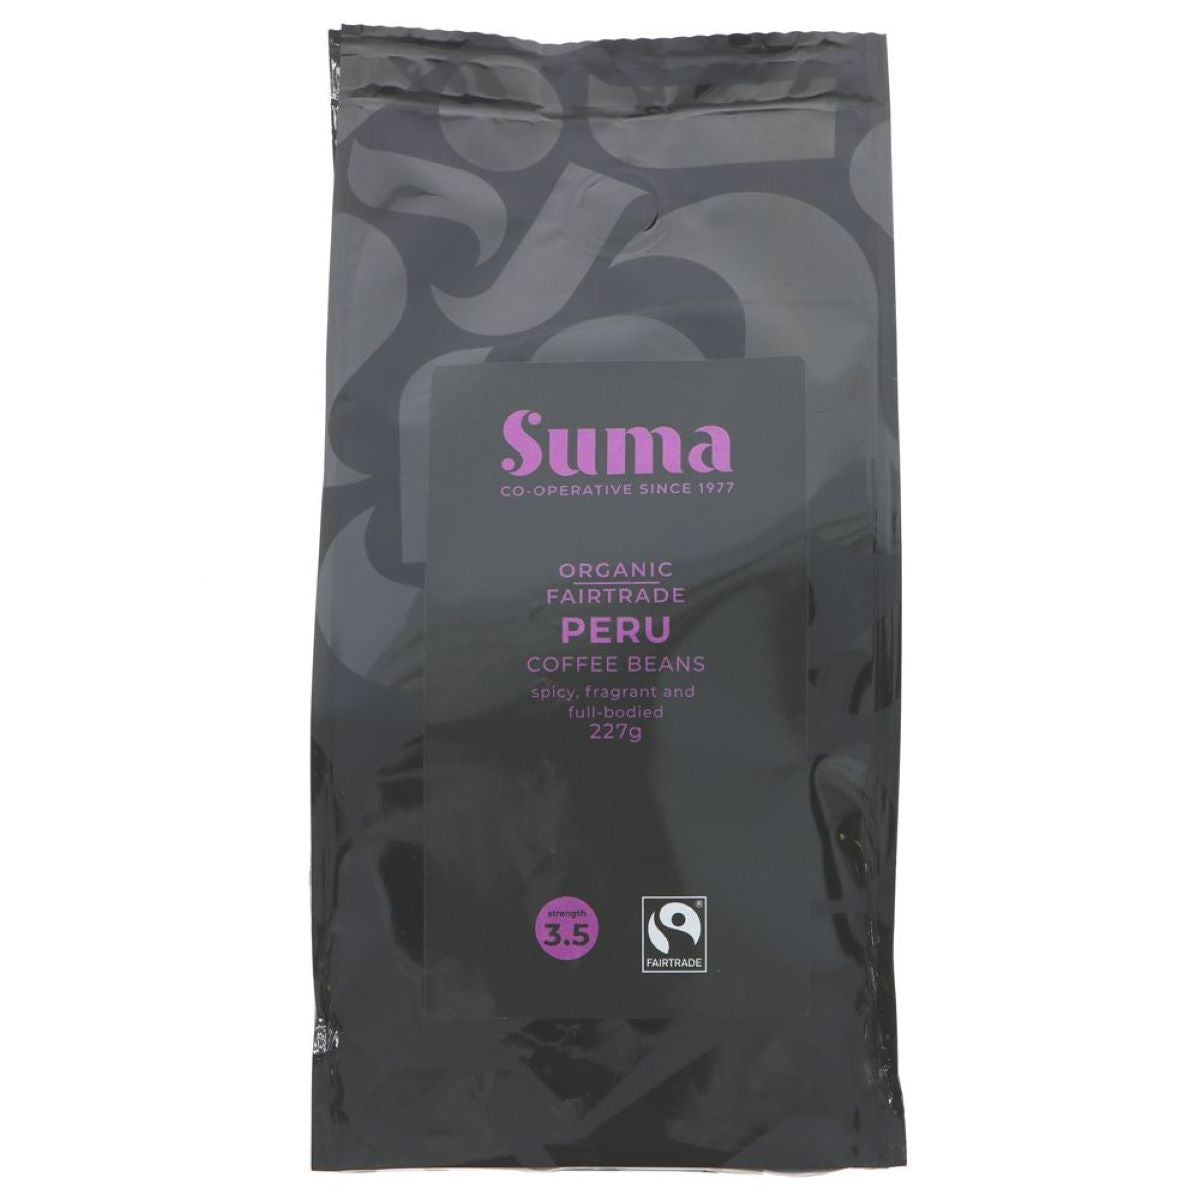 Suma Peru Coffee Beans 227g